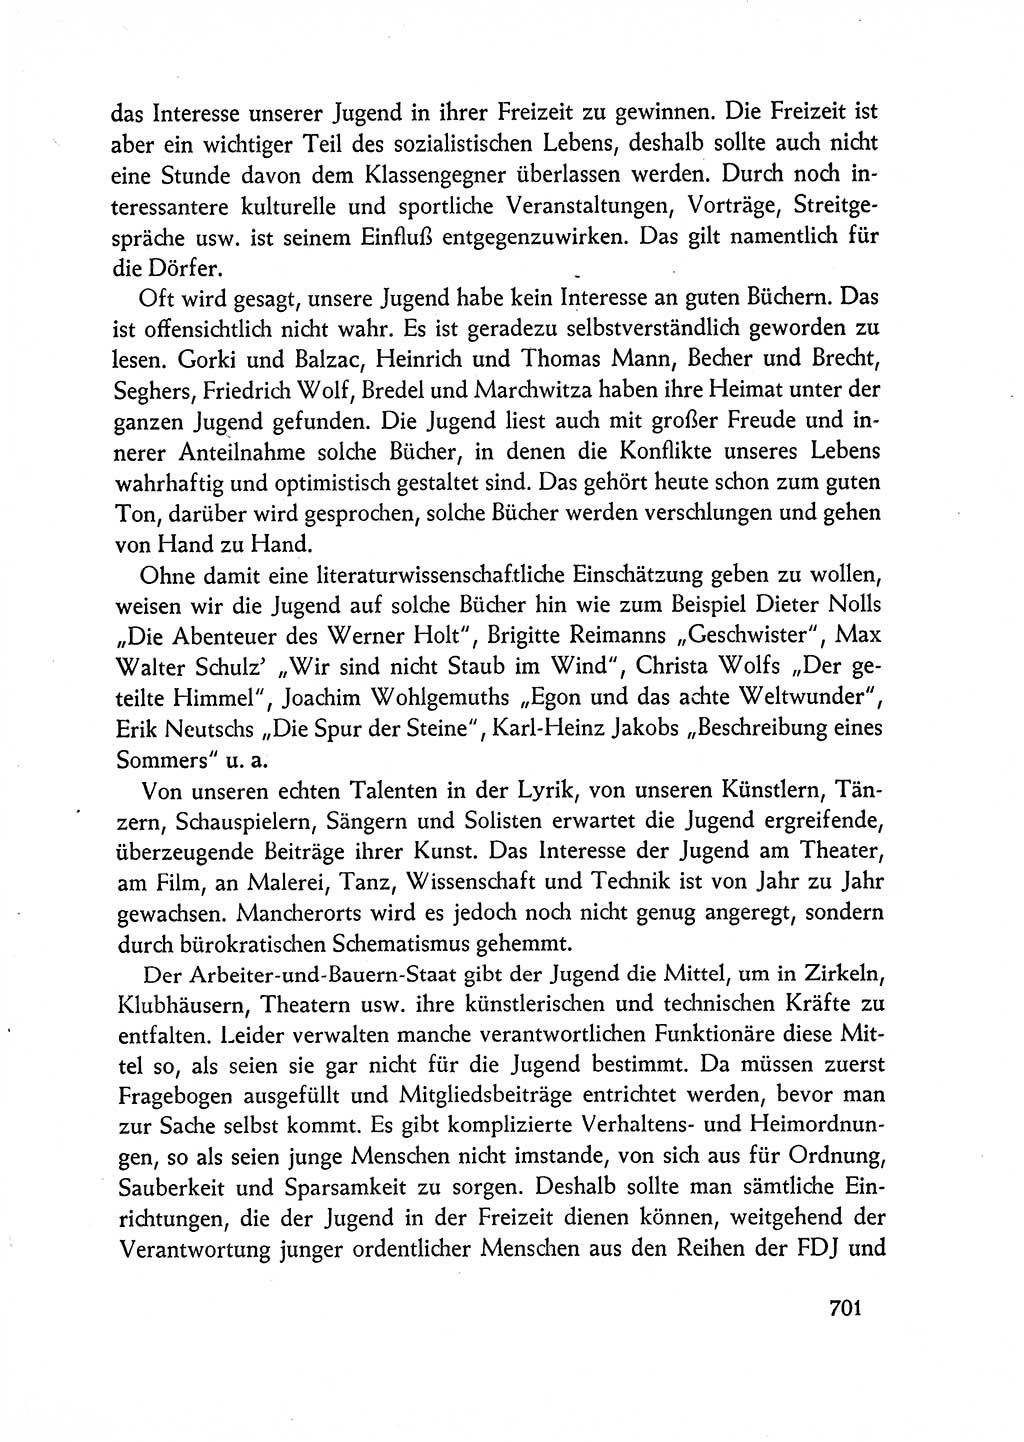 Dokumente der Sozialistischen Einheitspartei Deutschlands (SED) [Deutsche Demokratische Republik (DDR)] 1962-1963, Seite 701 (Dok. SED DDR 1962-1963, S. 701)